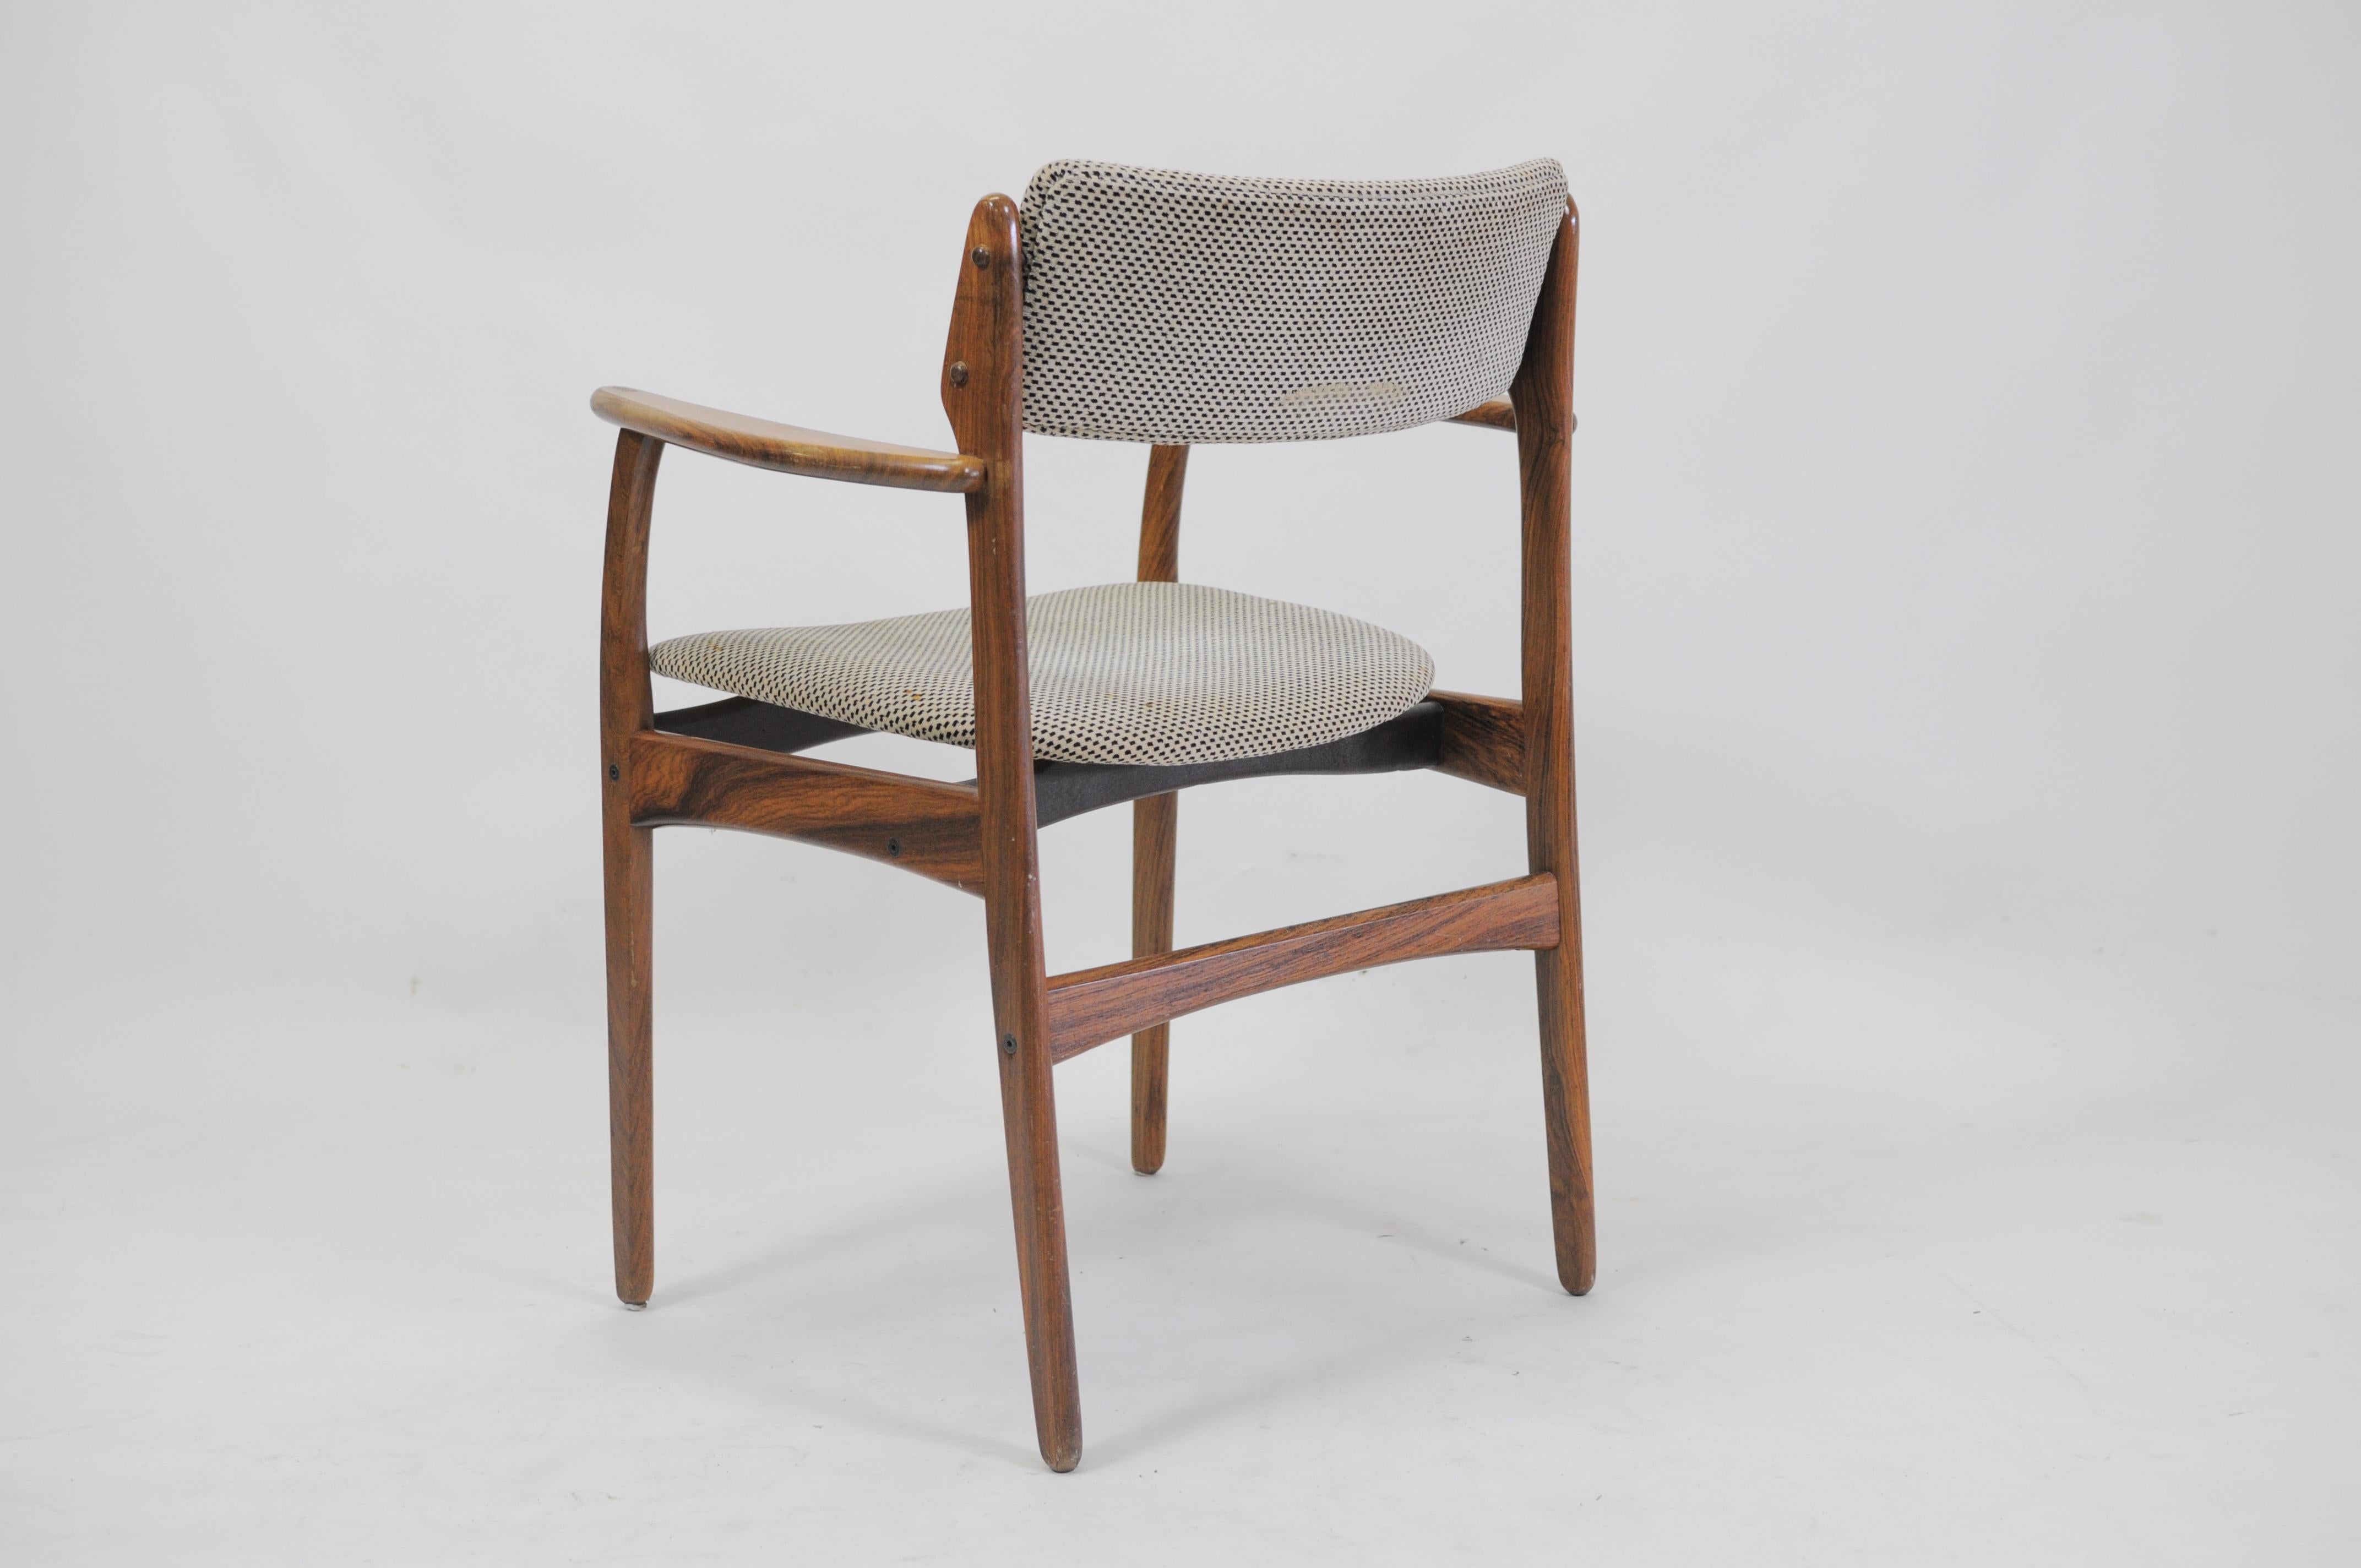 Rare ensemble de quatre fauteuils exclusifs en bois de rose des années 1960 attribués à Erik Buch.

Les chaises présentent le modèle 50 du fauteuil bien conçu d'Eleg avec son élégante assise flottante. Des détails élégants ont été ajoutés comme des